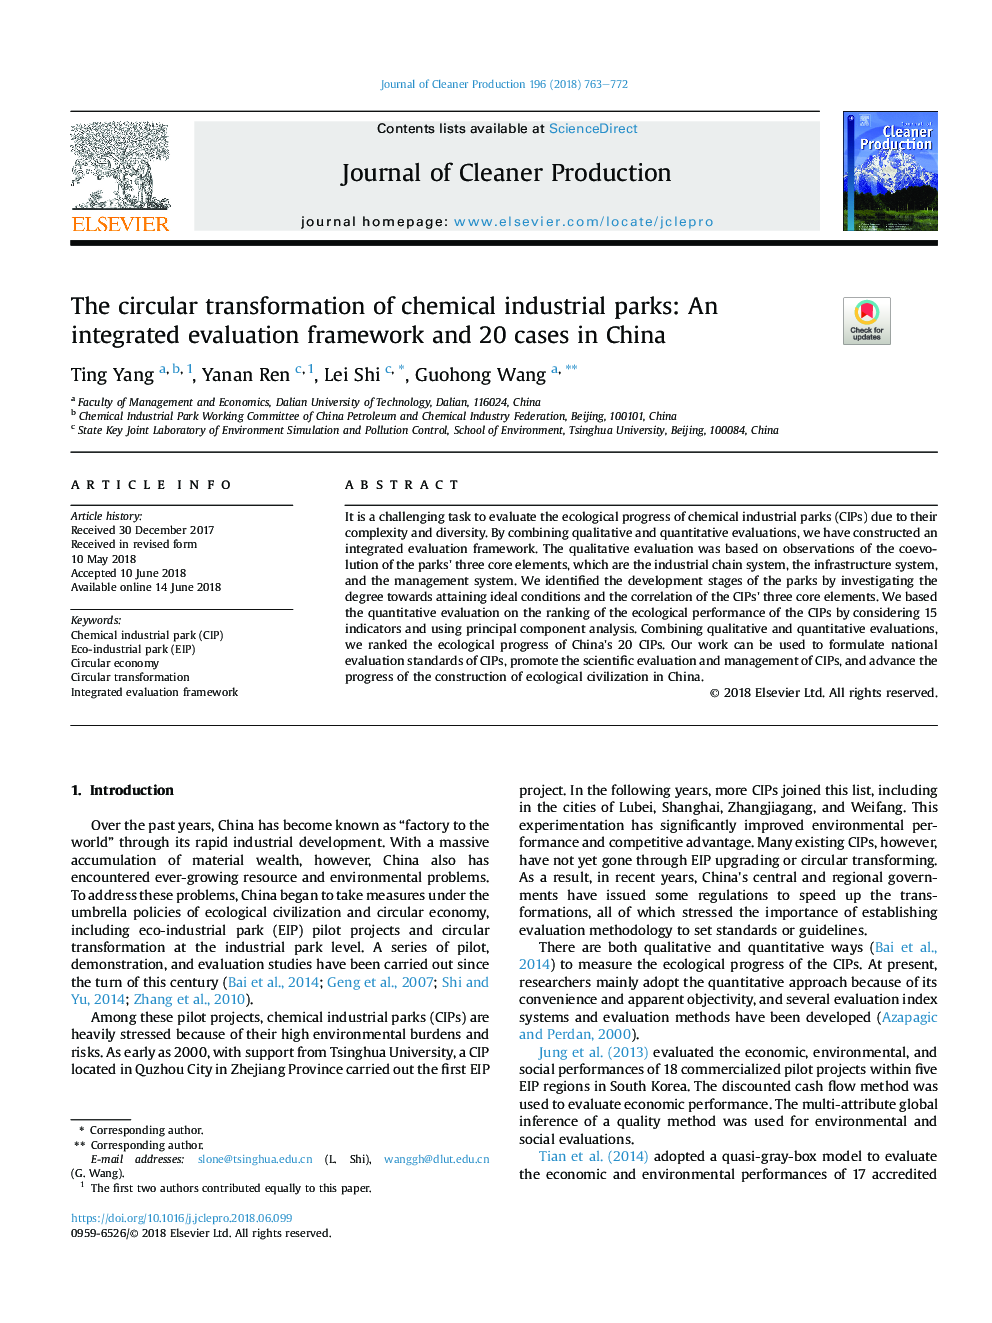 تغییر دایره ای پارک های شیمیایی صنعتی: چارچوب ارزیابی یکپارچه و 20 مورد در چین 